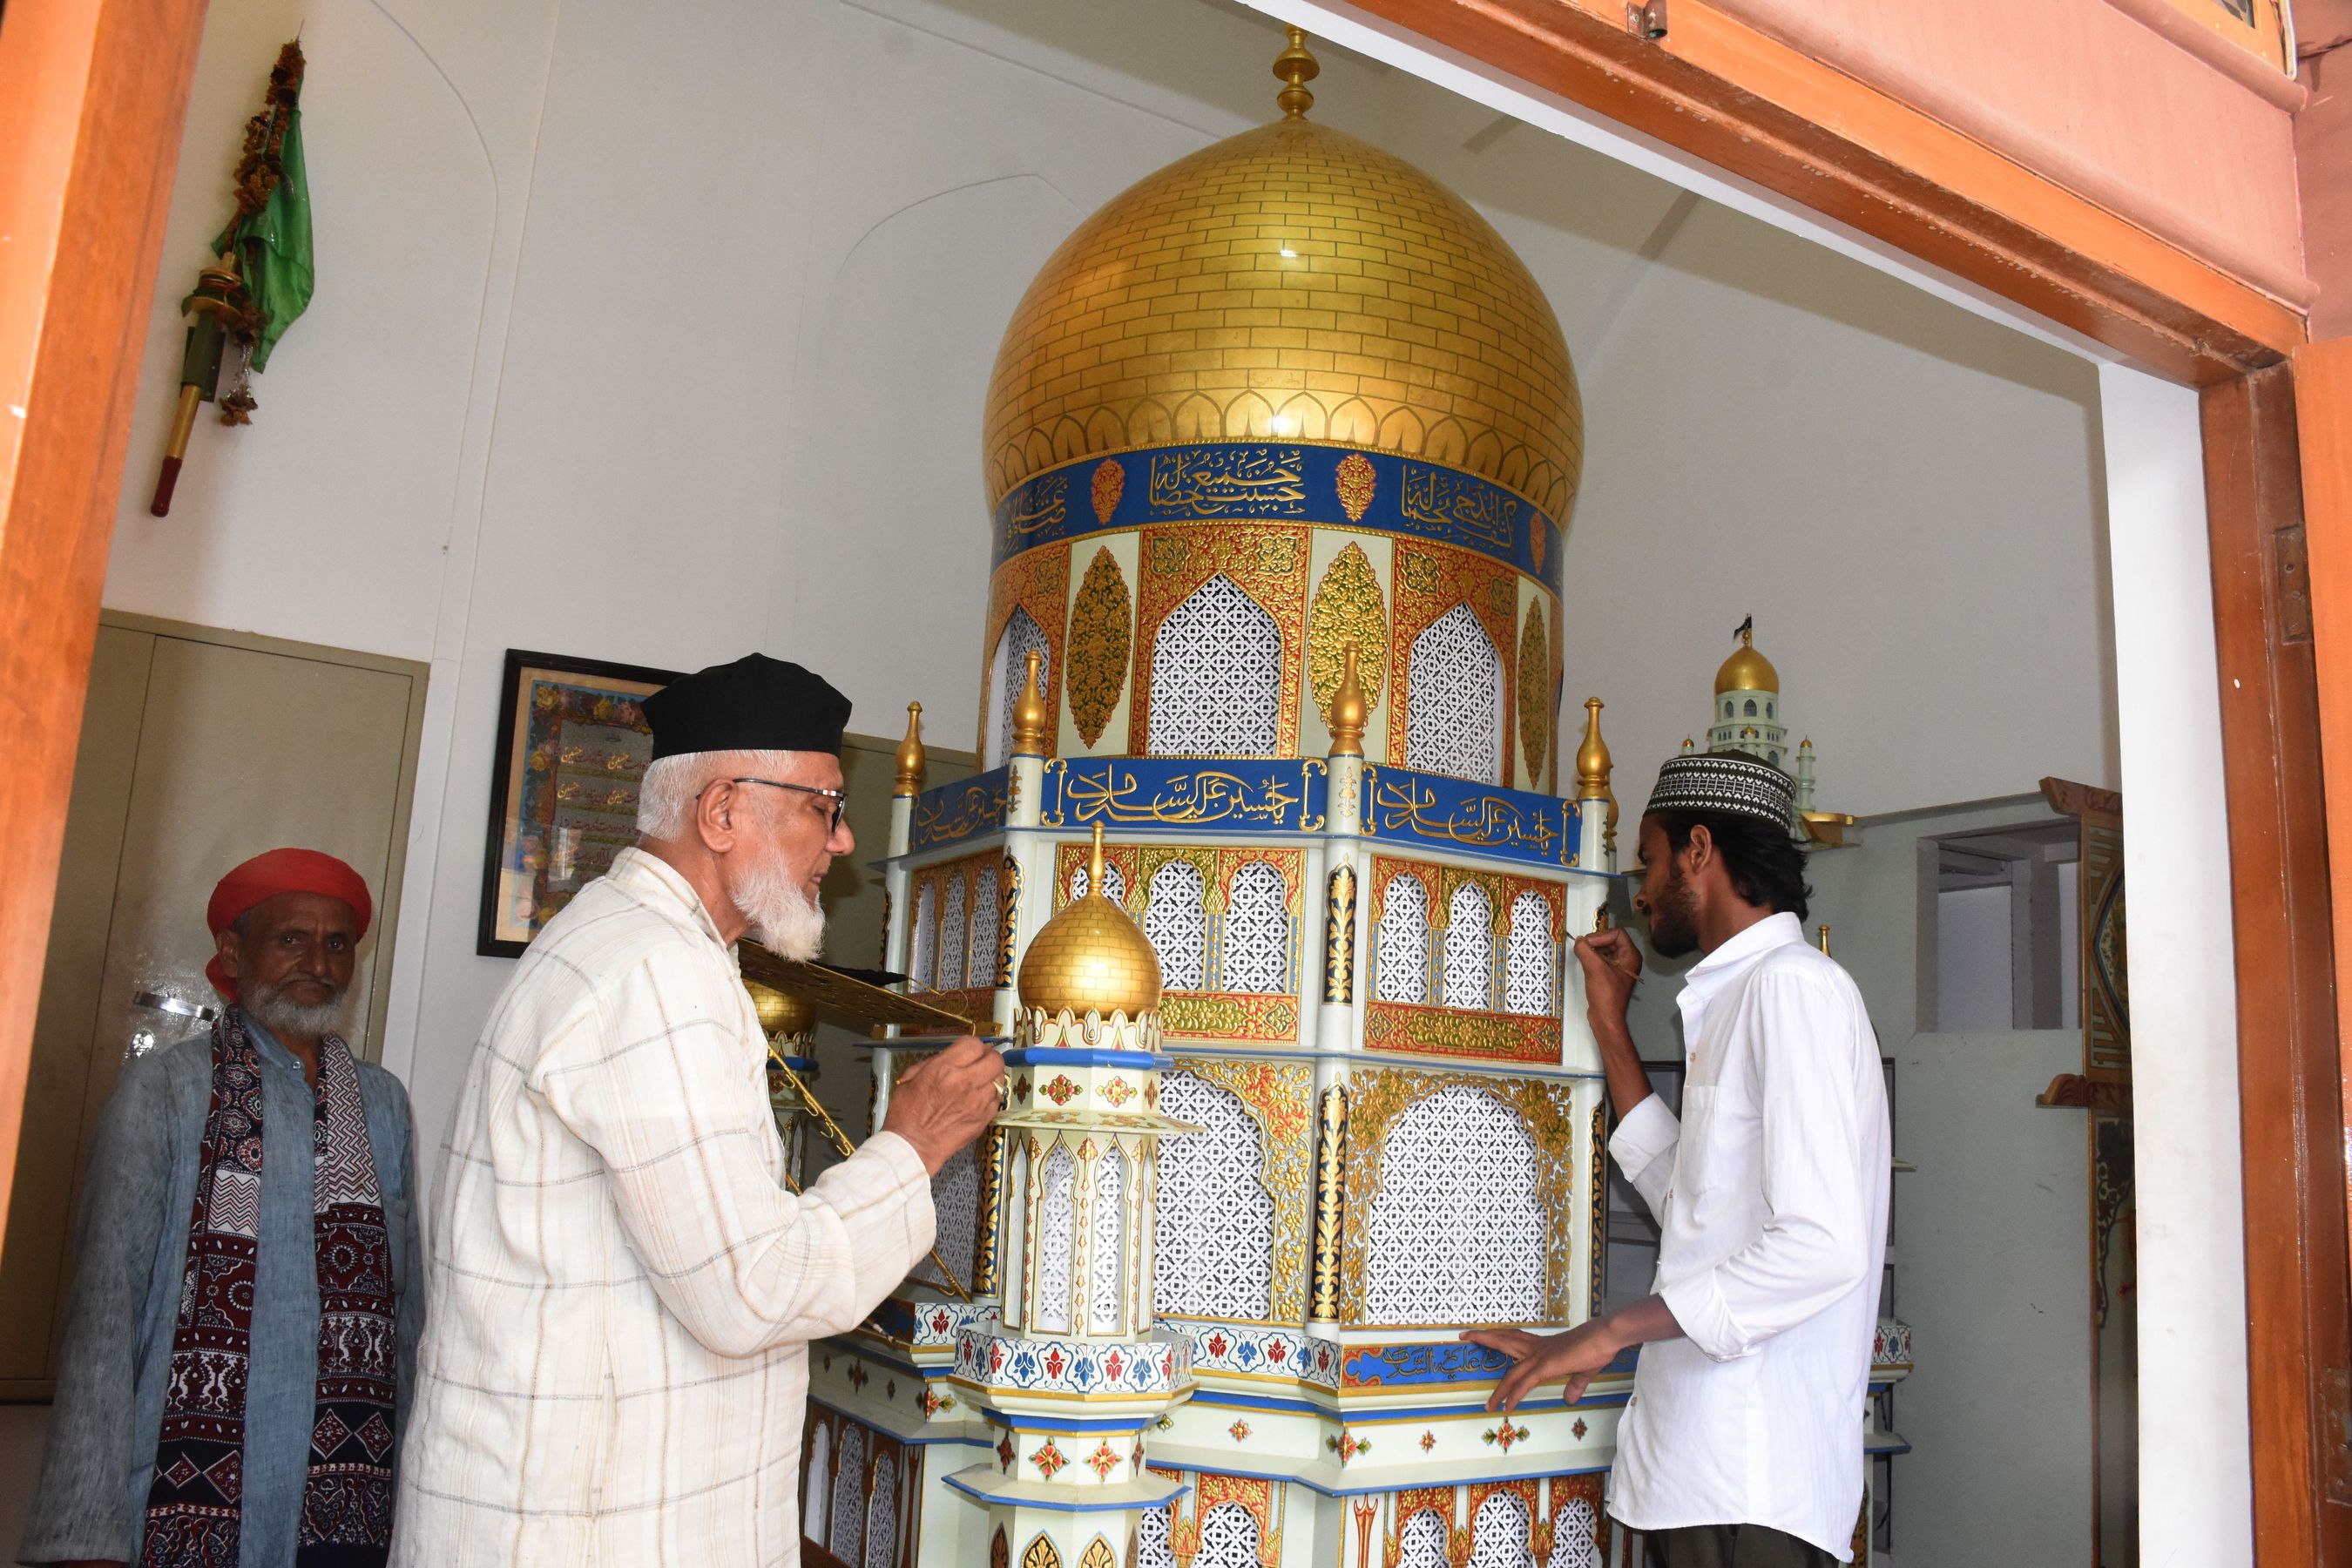 बीकानेर हजरत इमाम हुसैन (रजि.) की याद में निकले ताजिये बुधवार शाम को नगर की
विभिन्न कर्बलाओं में मातमी माहौल में ठंडे किए गए